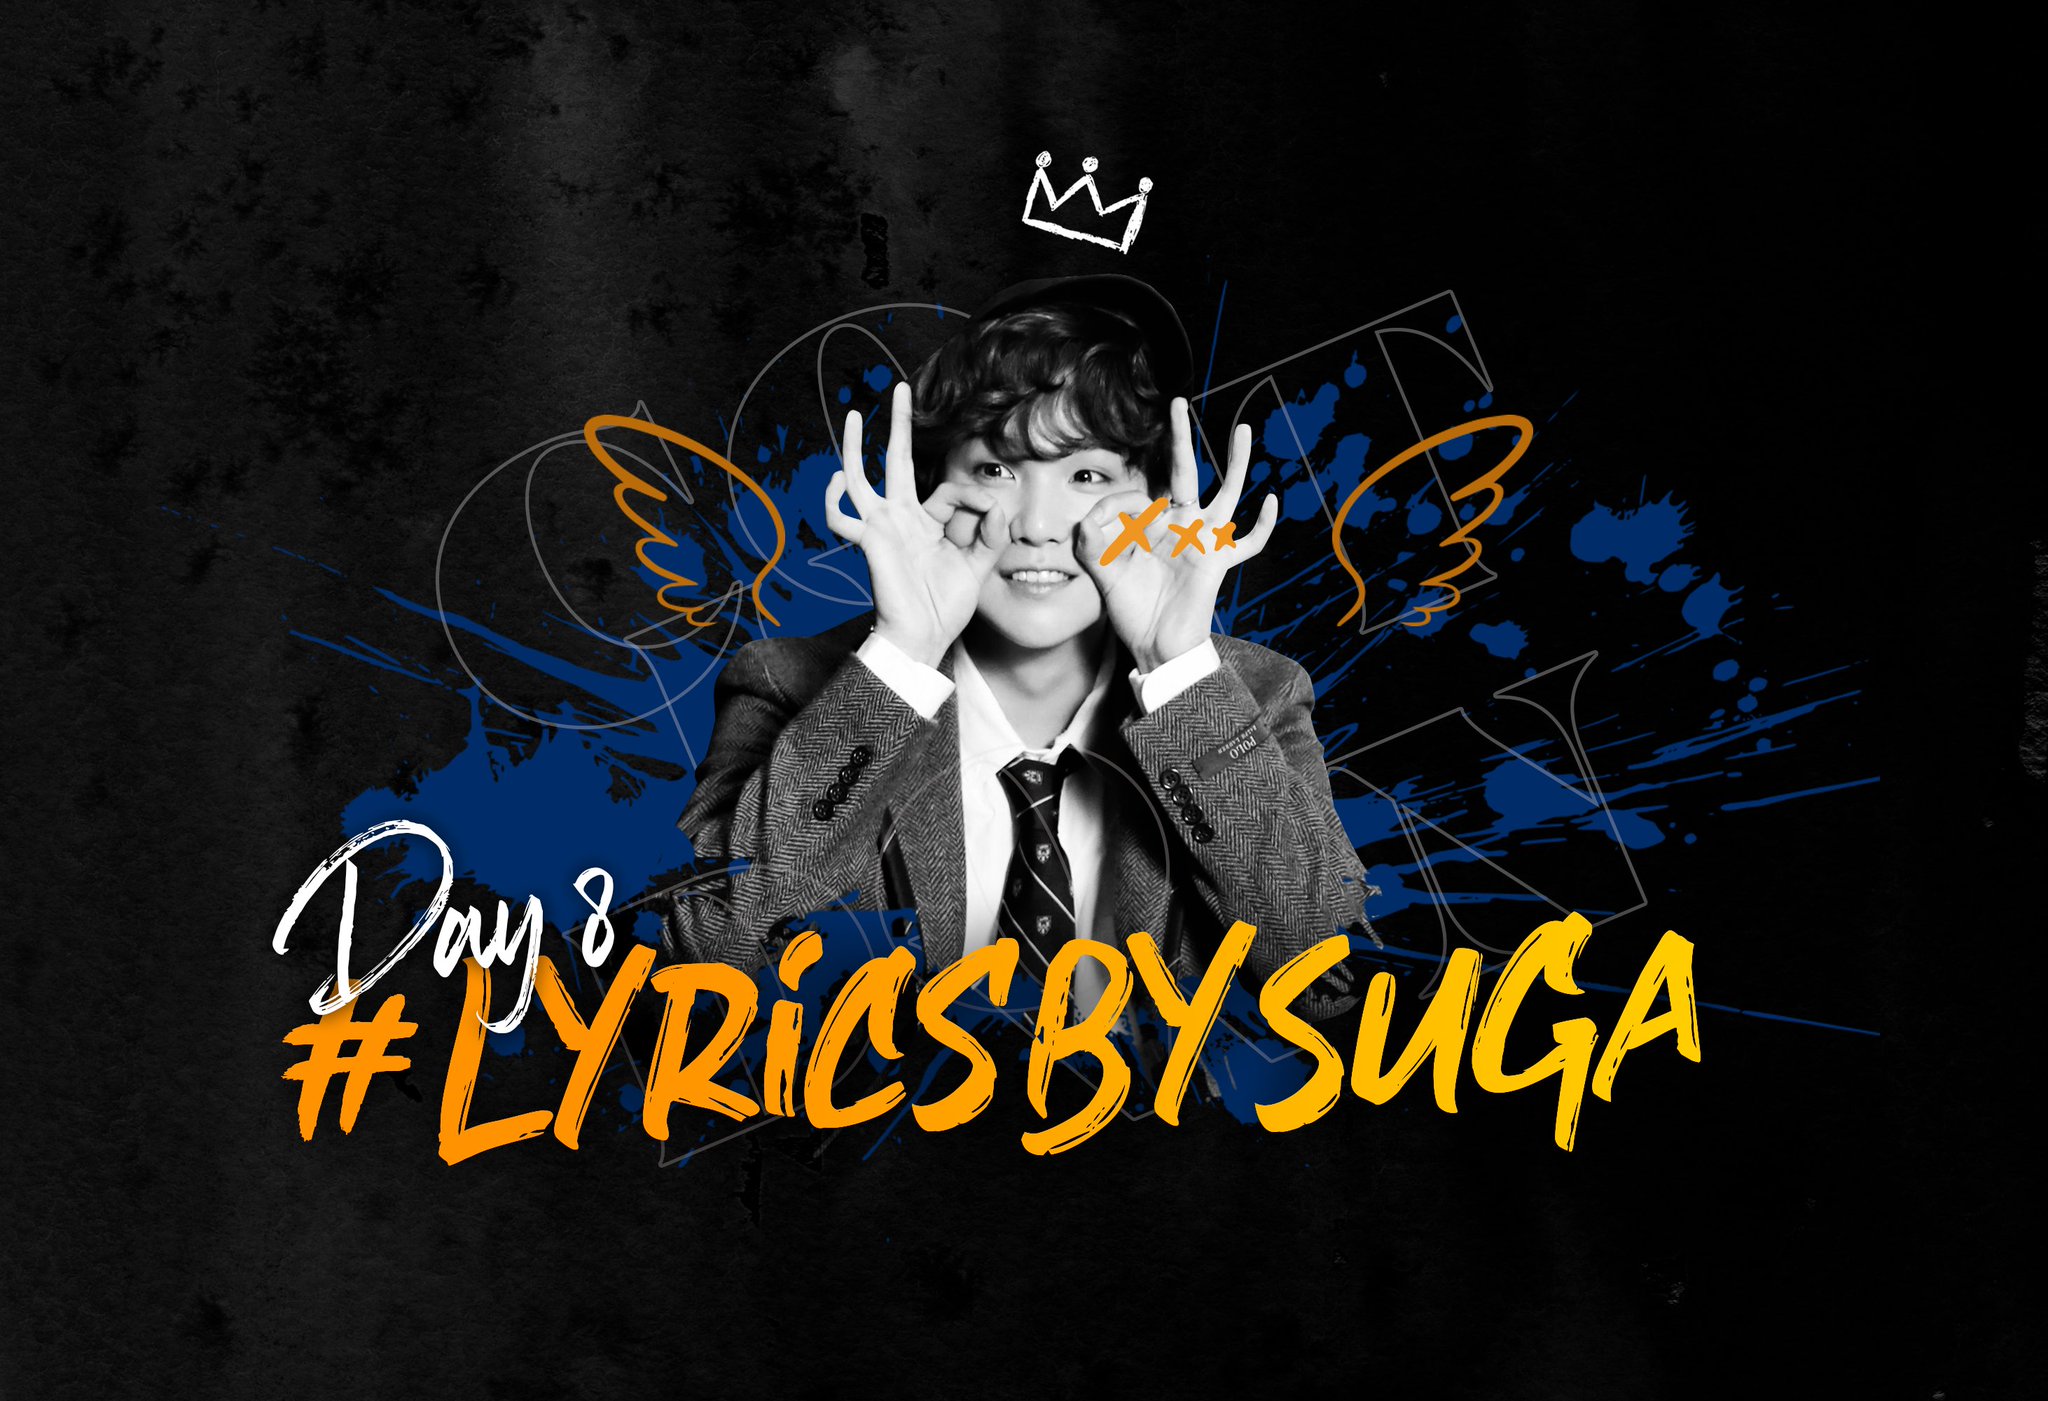 Lyrics by SUGA (hashtag to celebrate SUGA's lyrics)